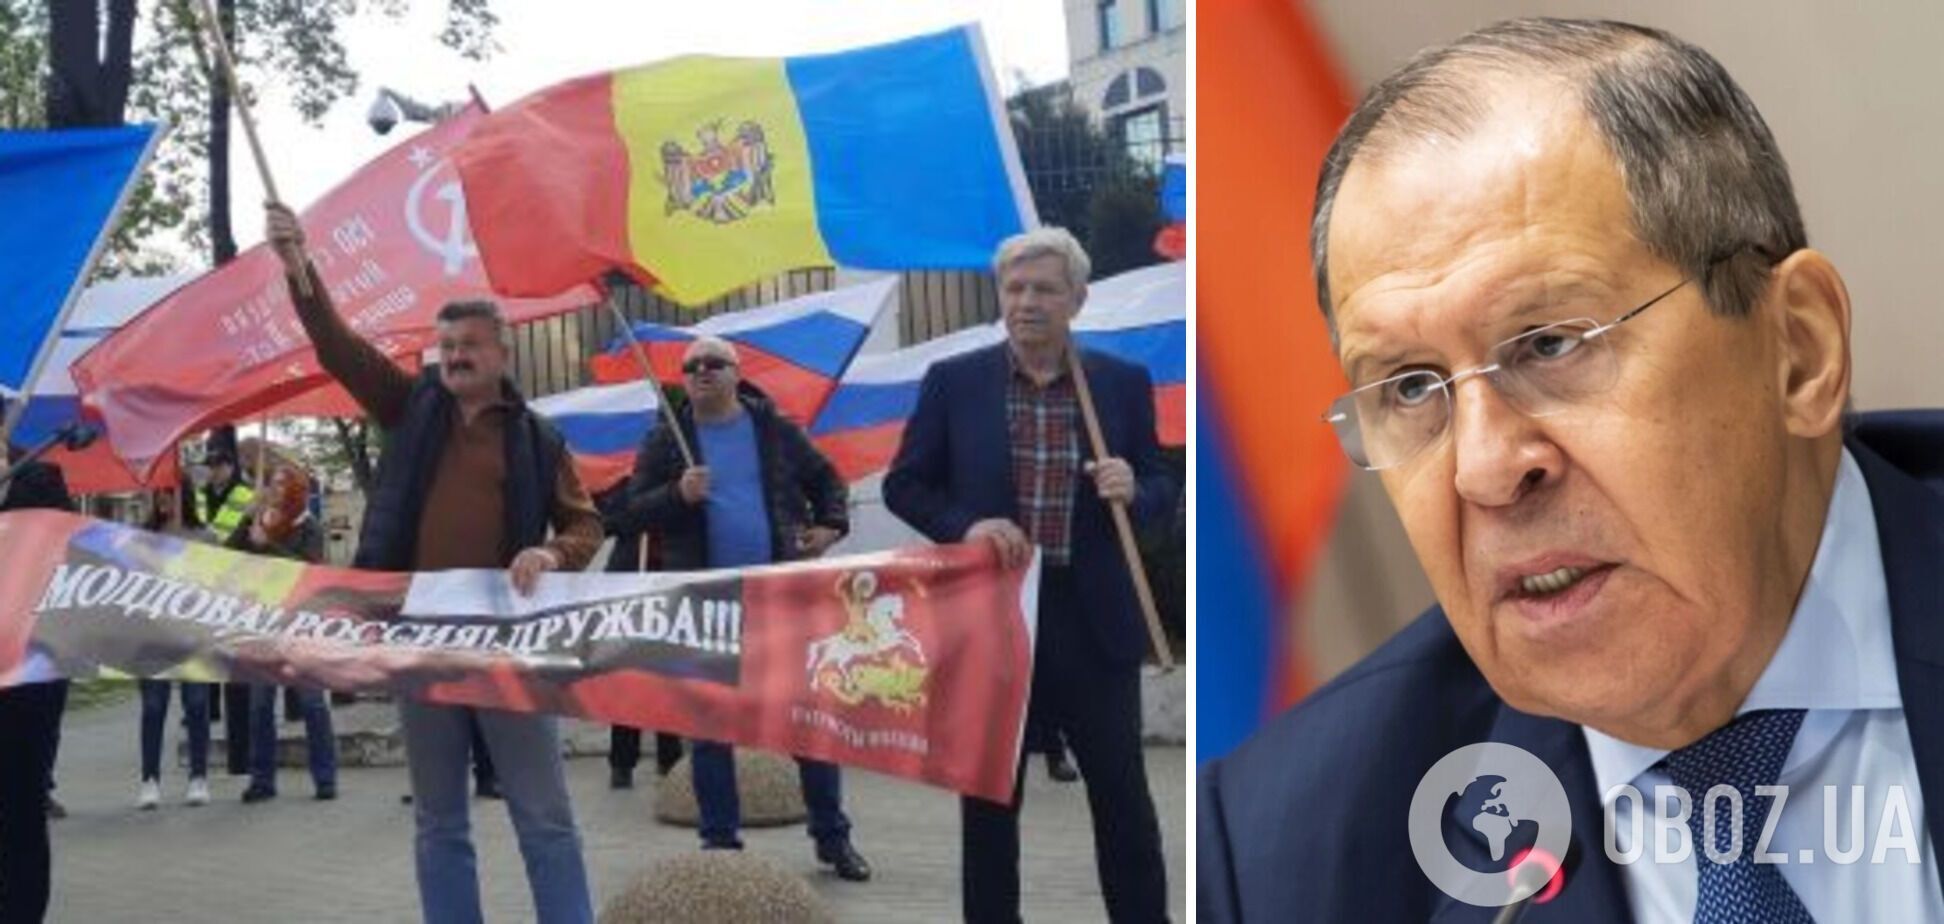 Лавров намекнул, что Россия пойдет защищать права русскоязычных в Молдове